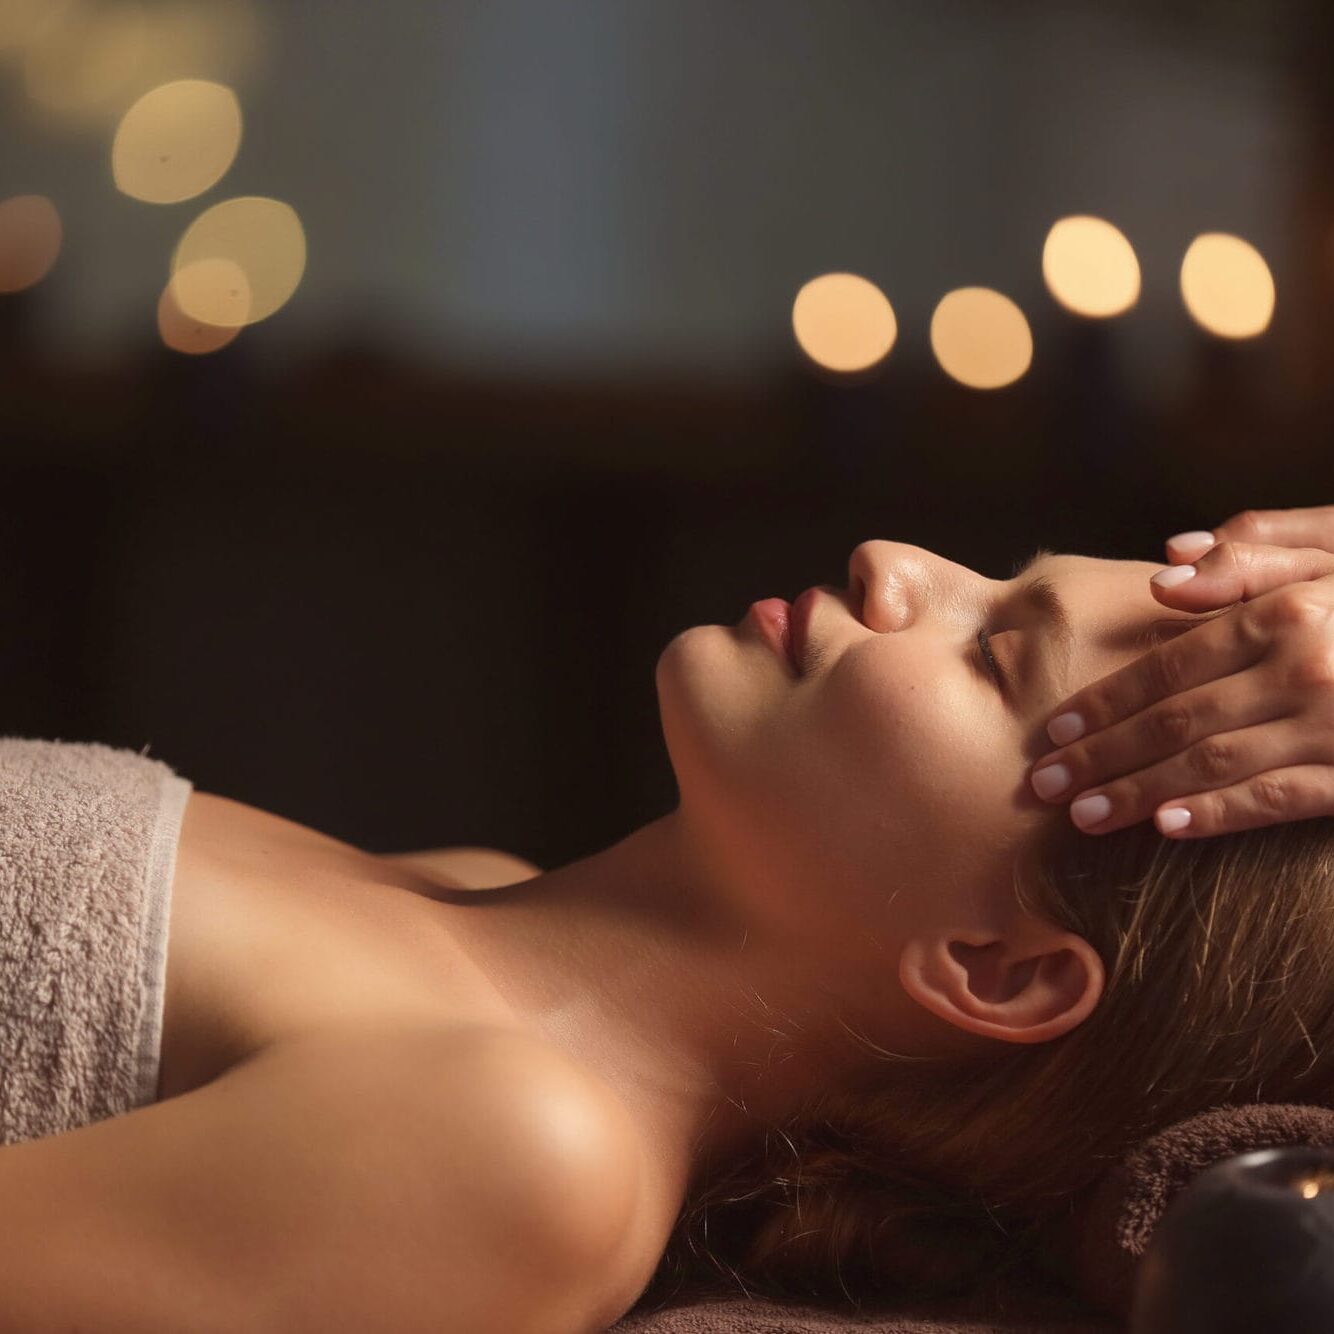 Beautiful young woman receiving facial massage in spa salon